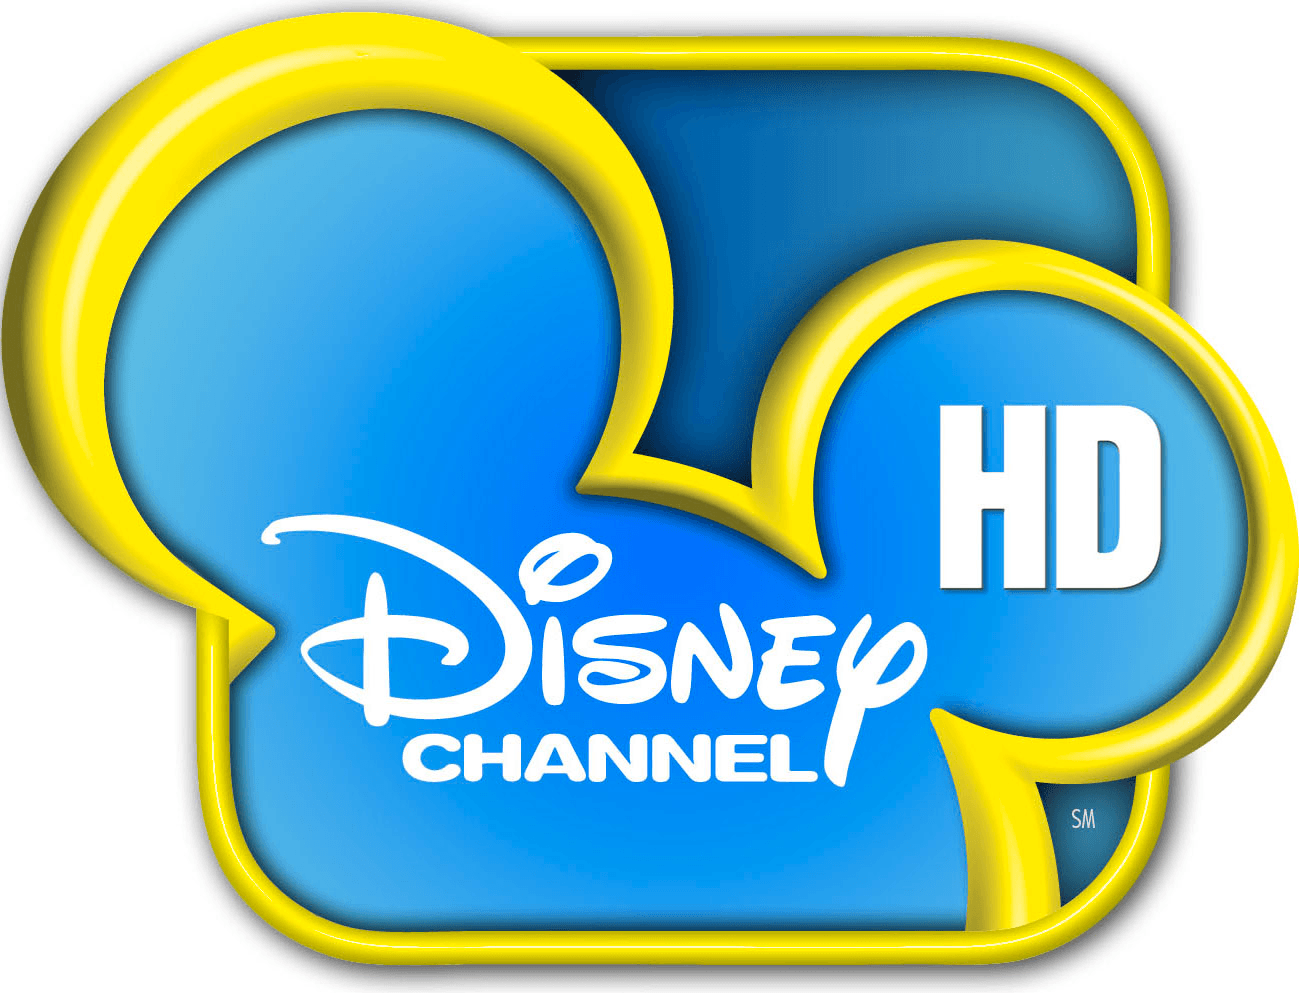 Disney Channel HD Logo - Disney channel hd Logos